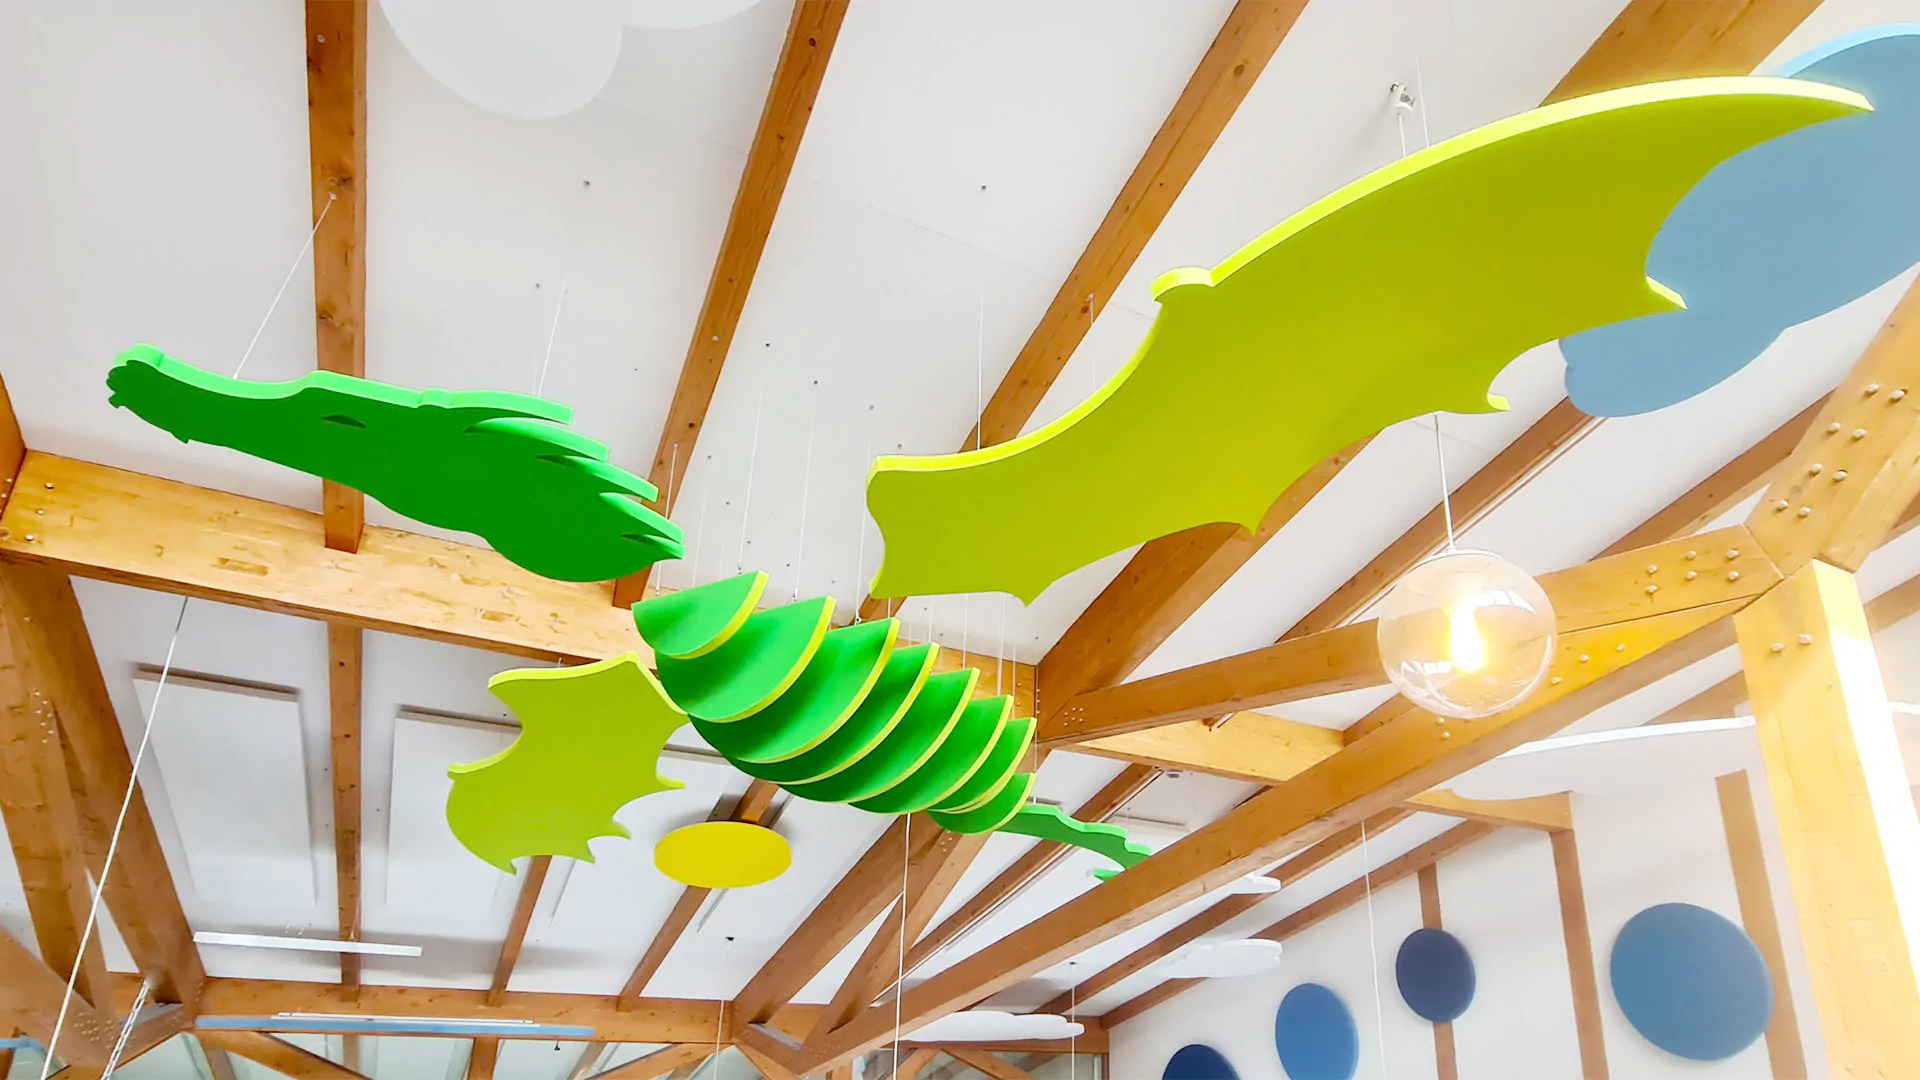 Ceiling absorber kindergarten baffles slats ceiling panels